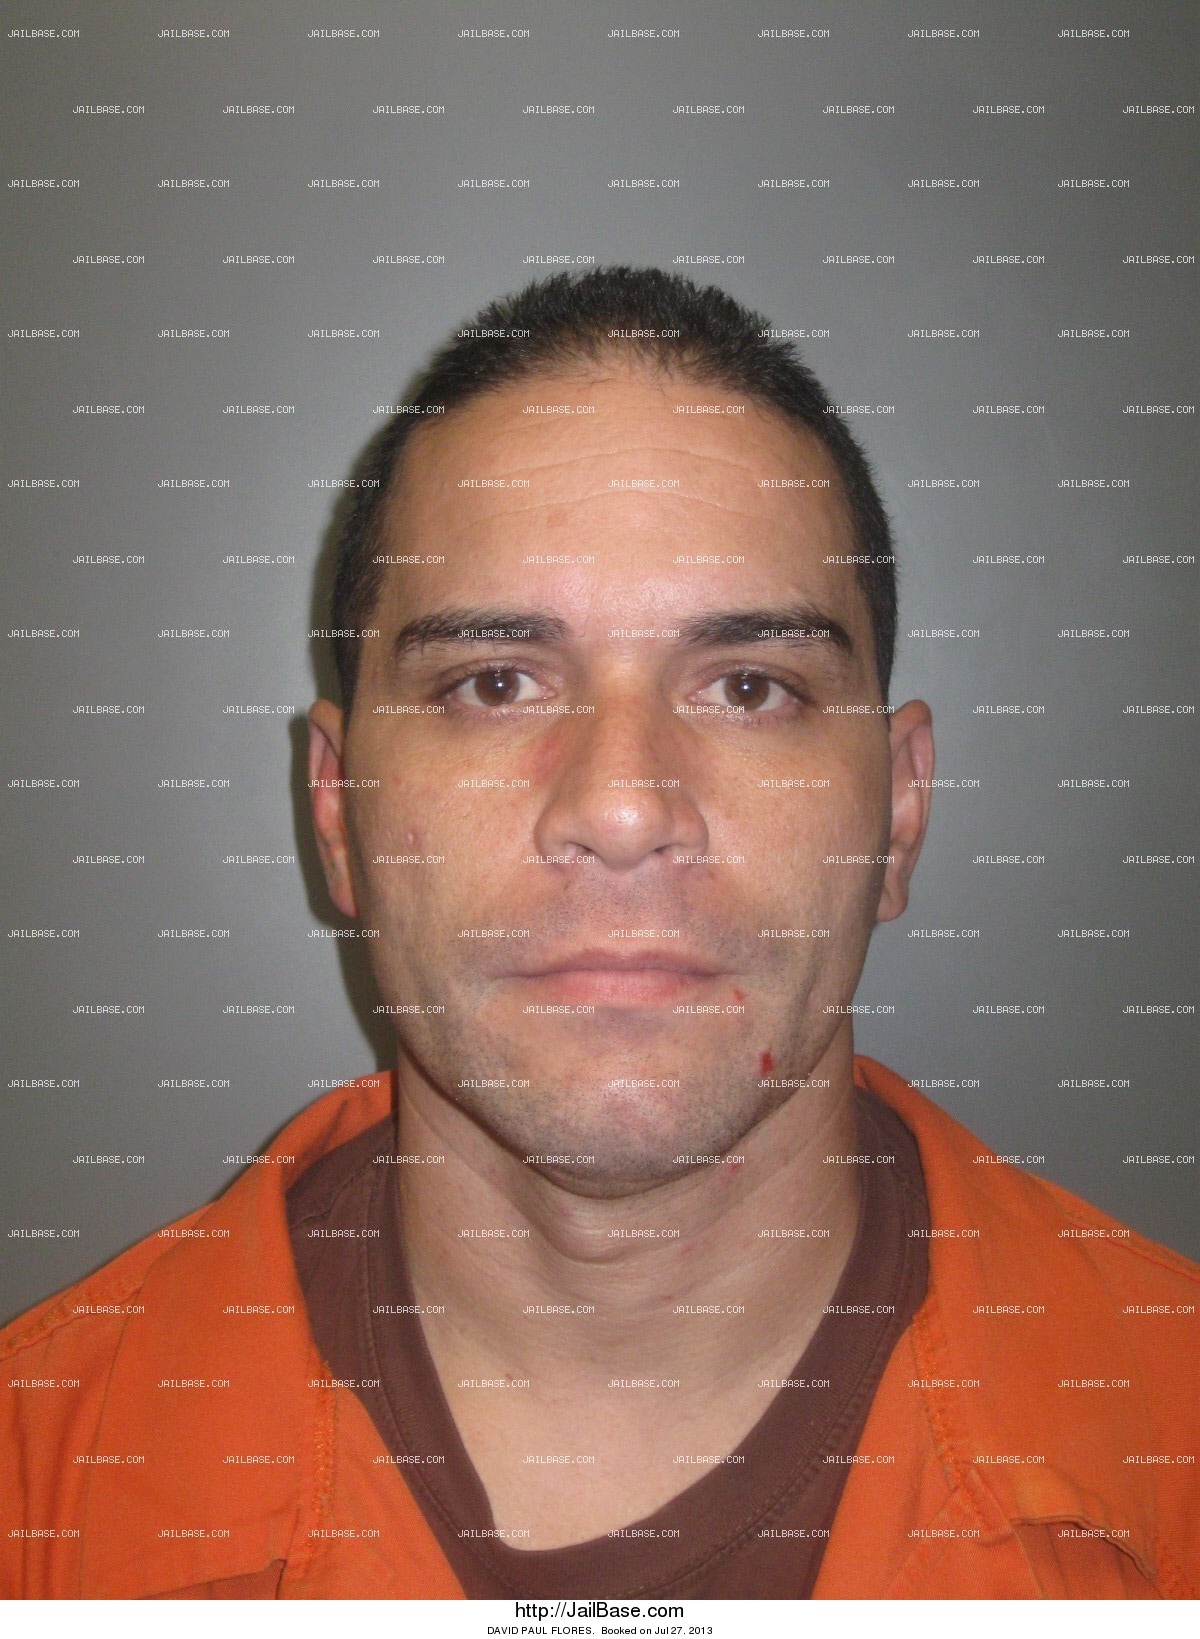 DAVID PAUL FLORES | Arrested on July 27, 2013 | JailBase